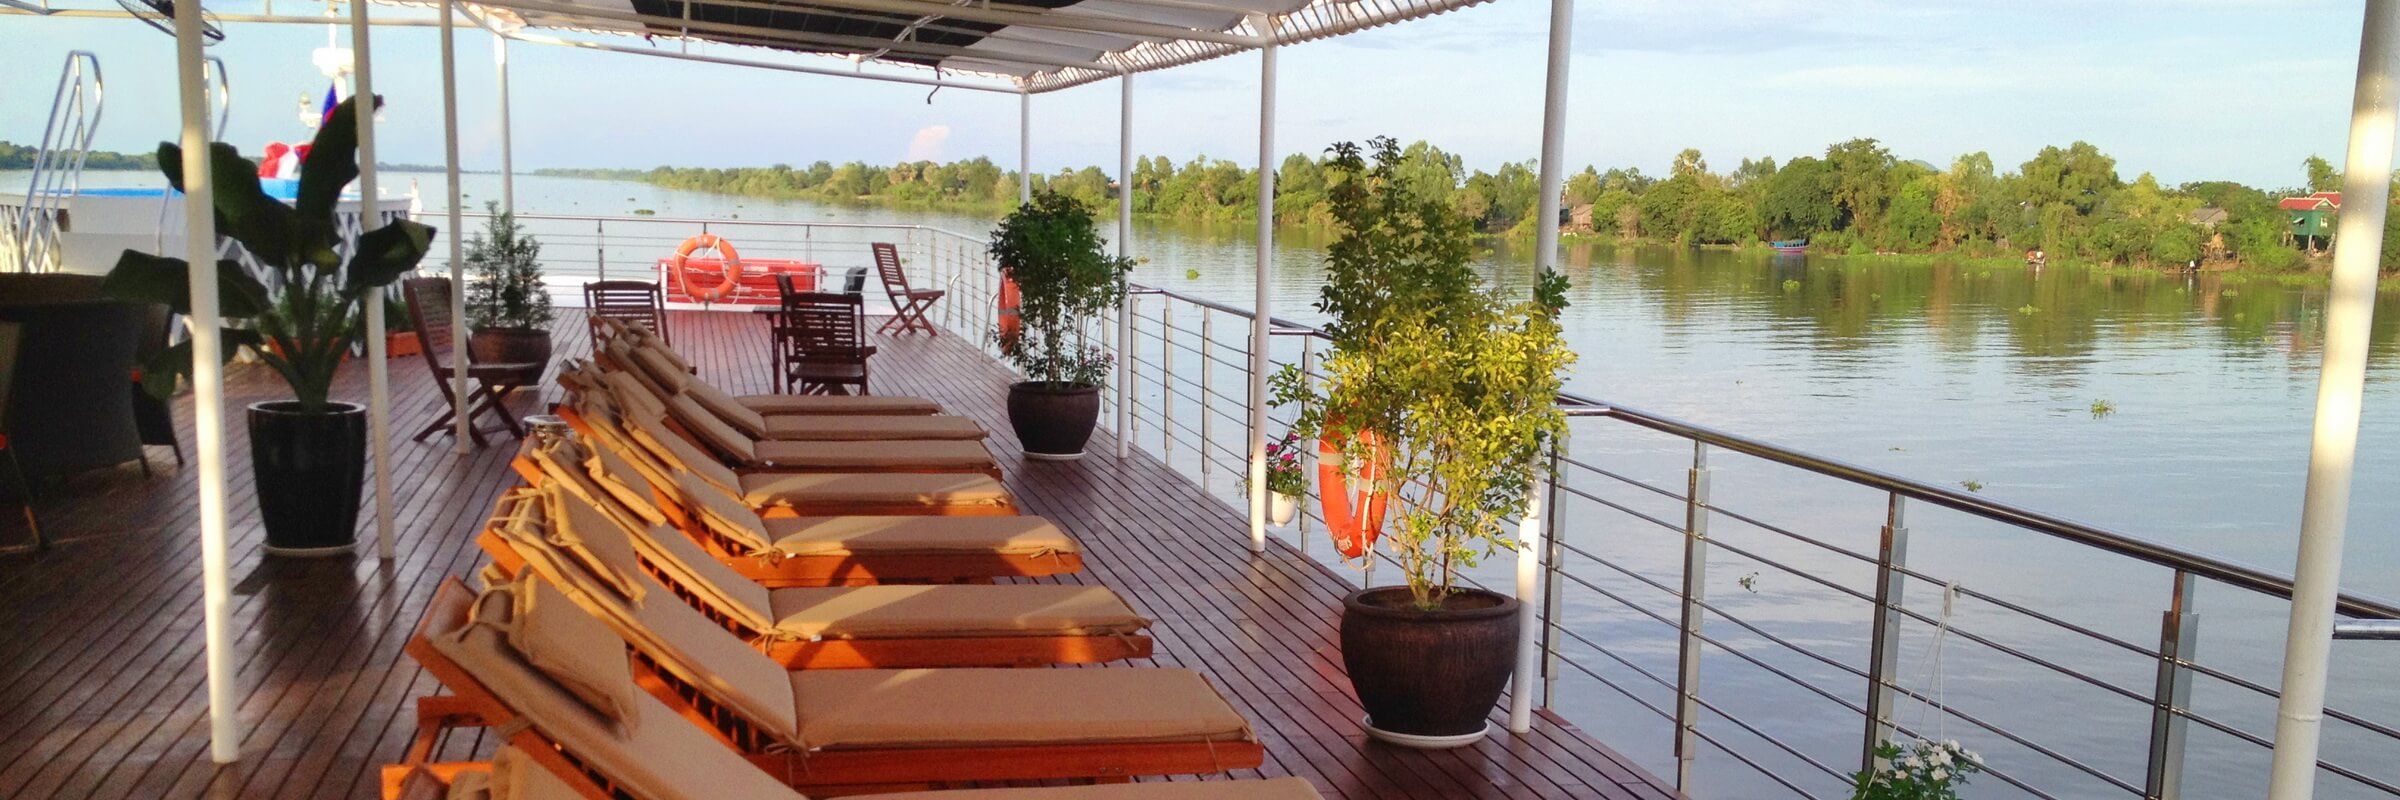 Das Sonnendeck der Mekong Adventurer mit bequemen Liegestühlen und Whirl-Pool lässt keine Wünsche offen.